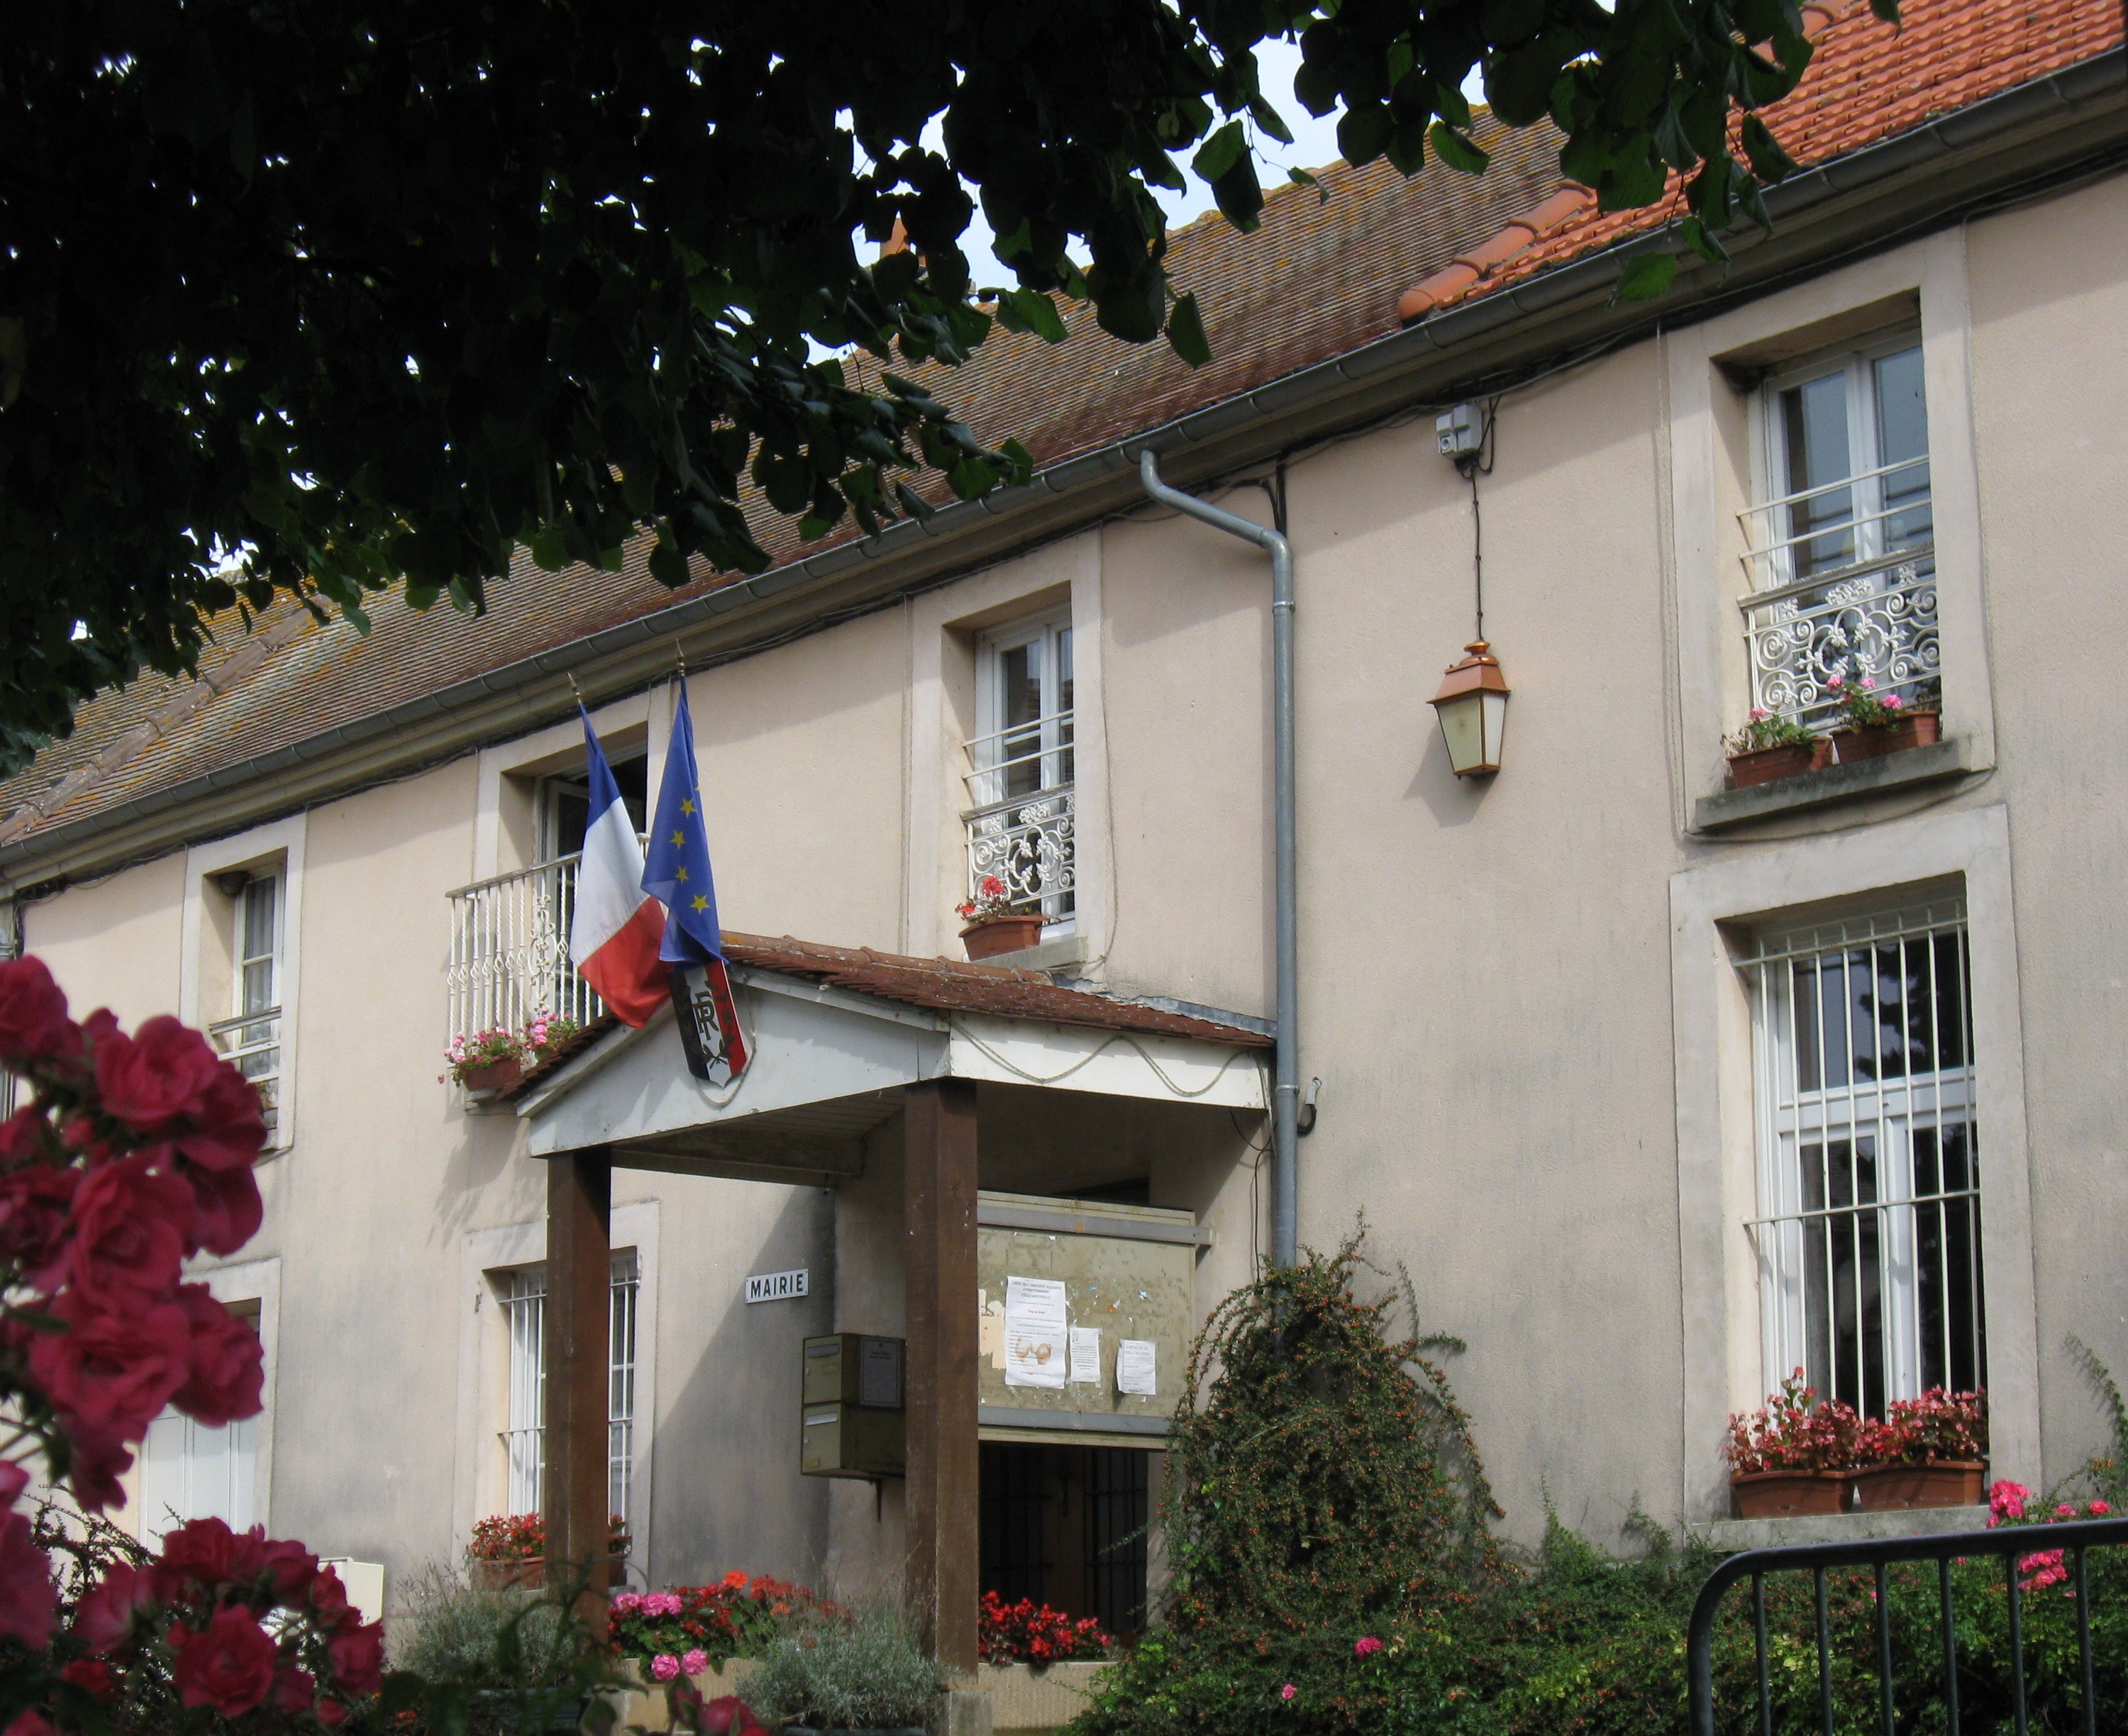 Villeroy, Seine-et-Marne - Wikipedia